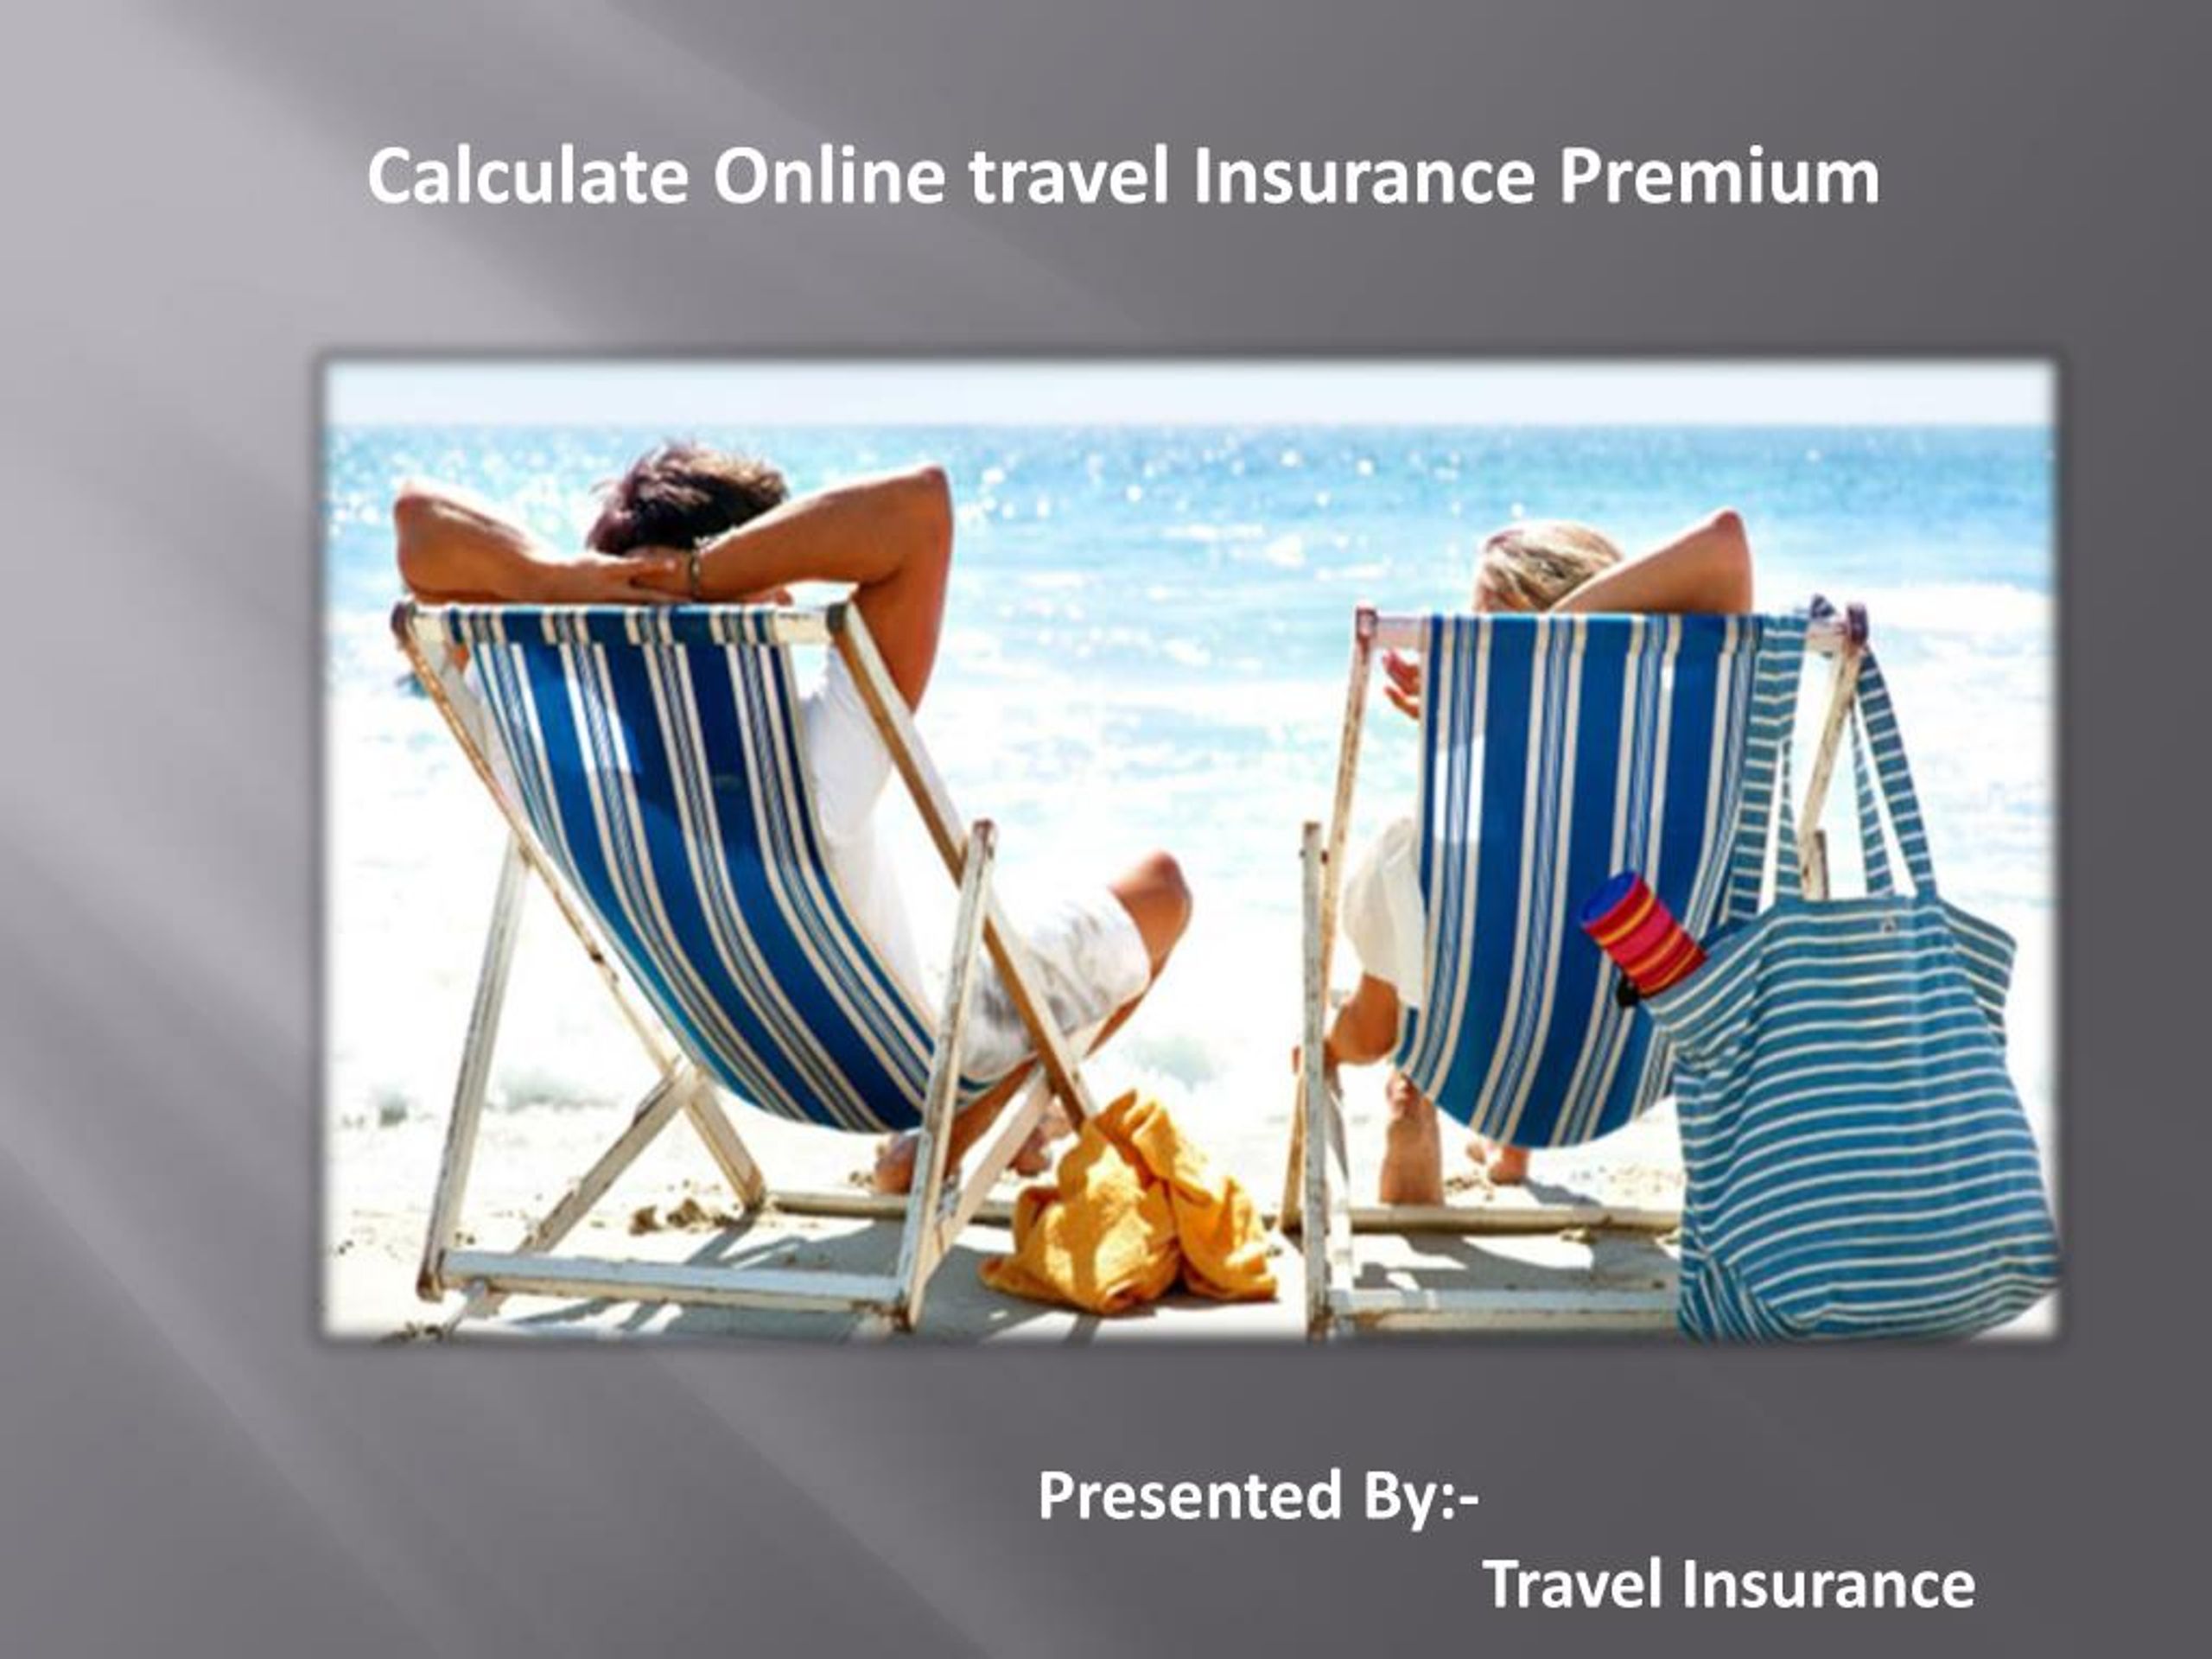 travel insurance premium calculator